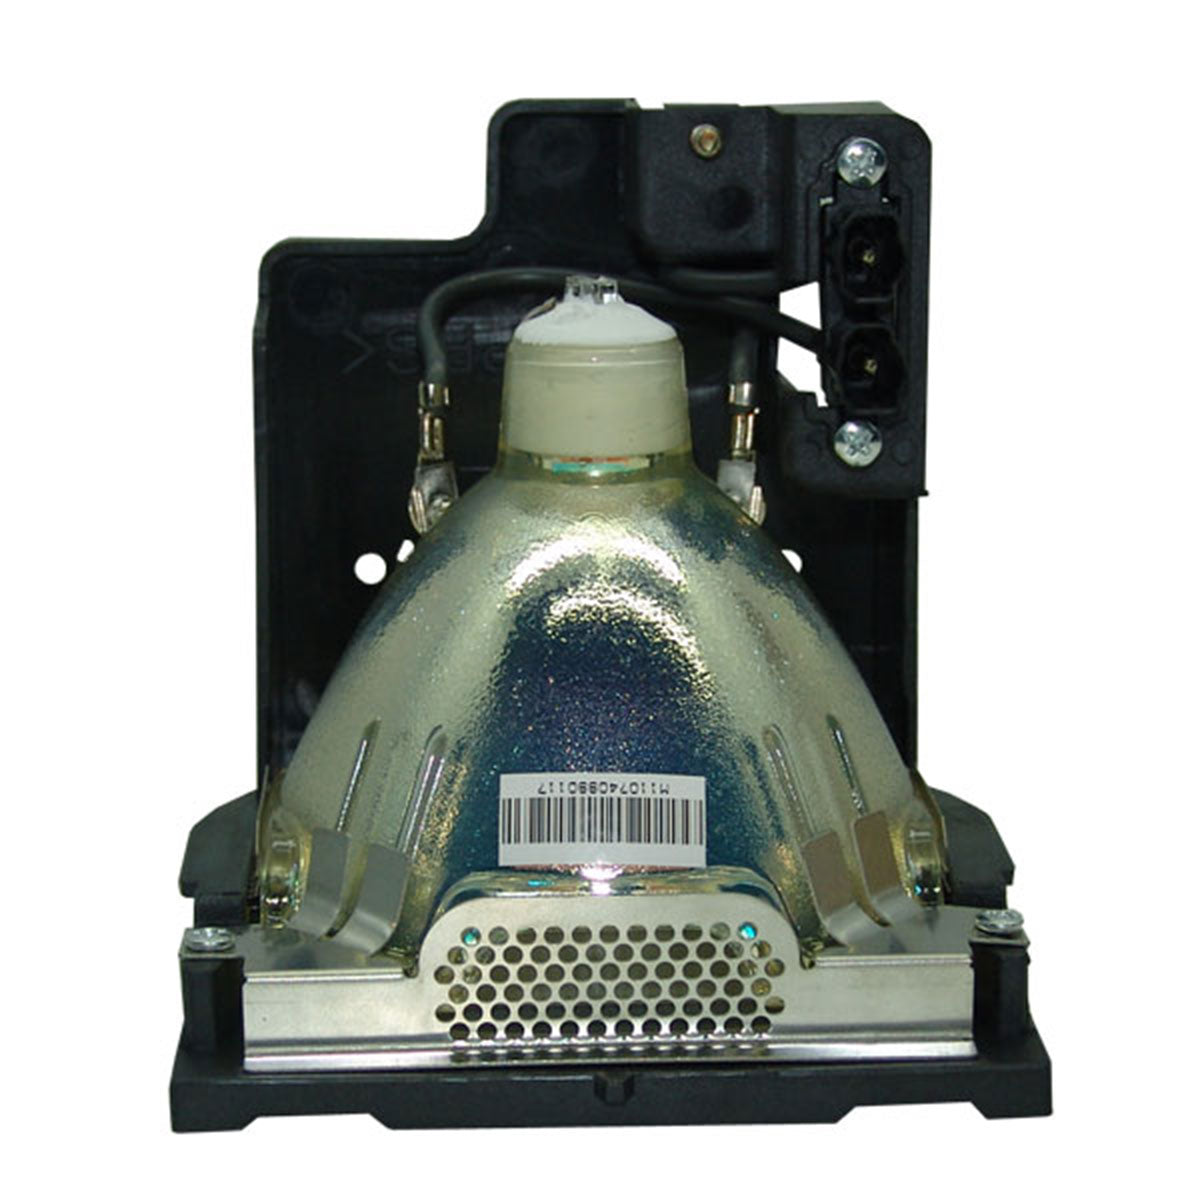 Christie 003-120183-01 Osram Projector Lamp Module